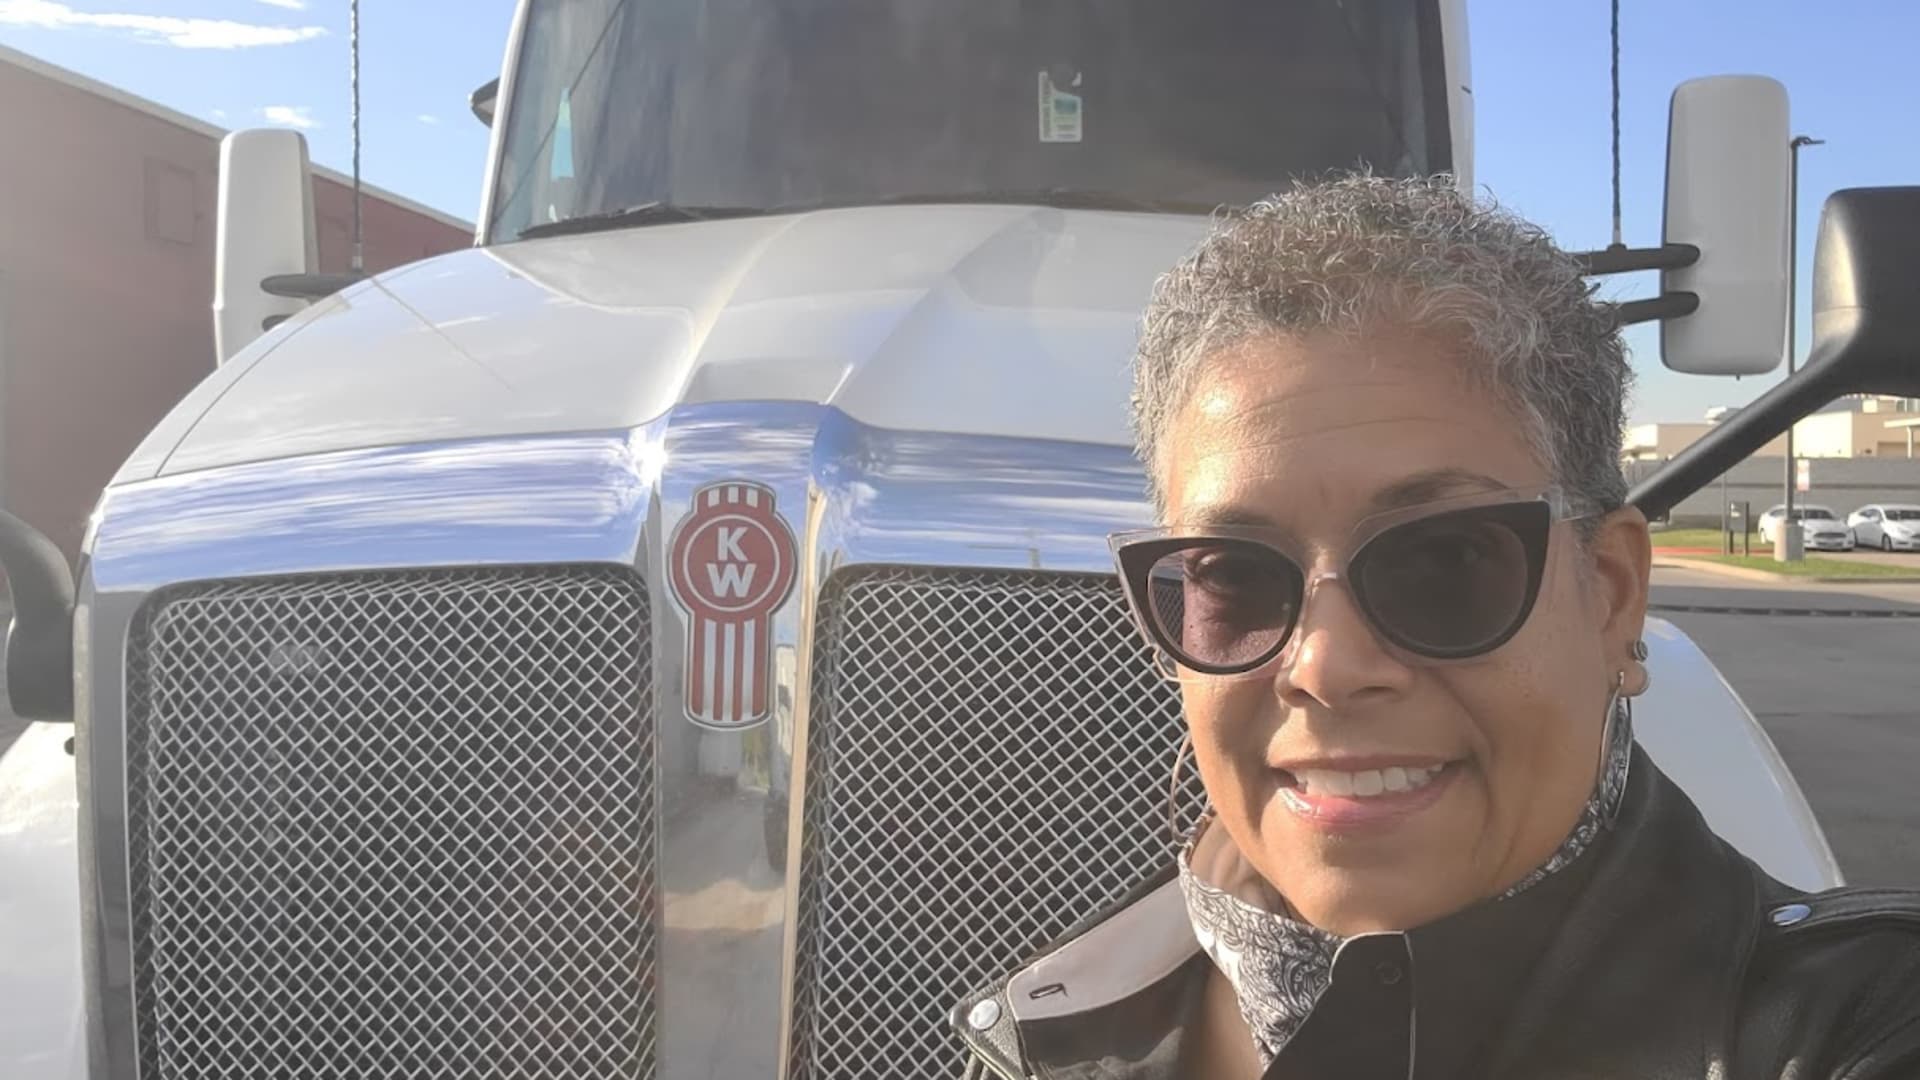 Frauen werden Trucker, da die Industrie den Mangel angeht